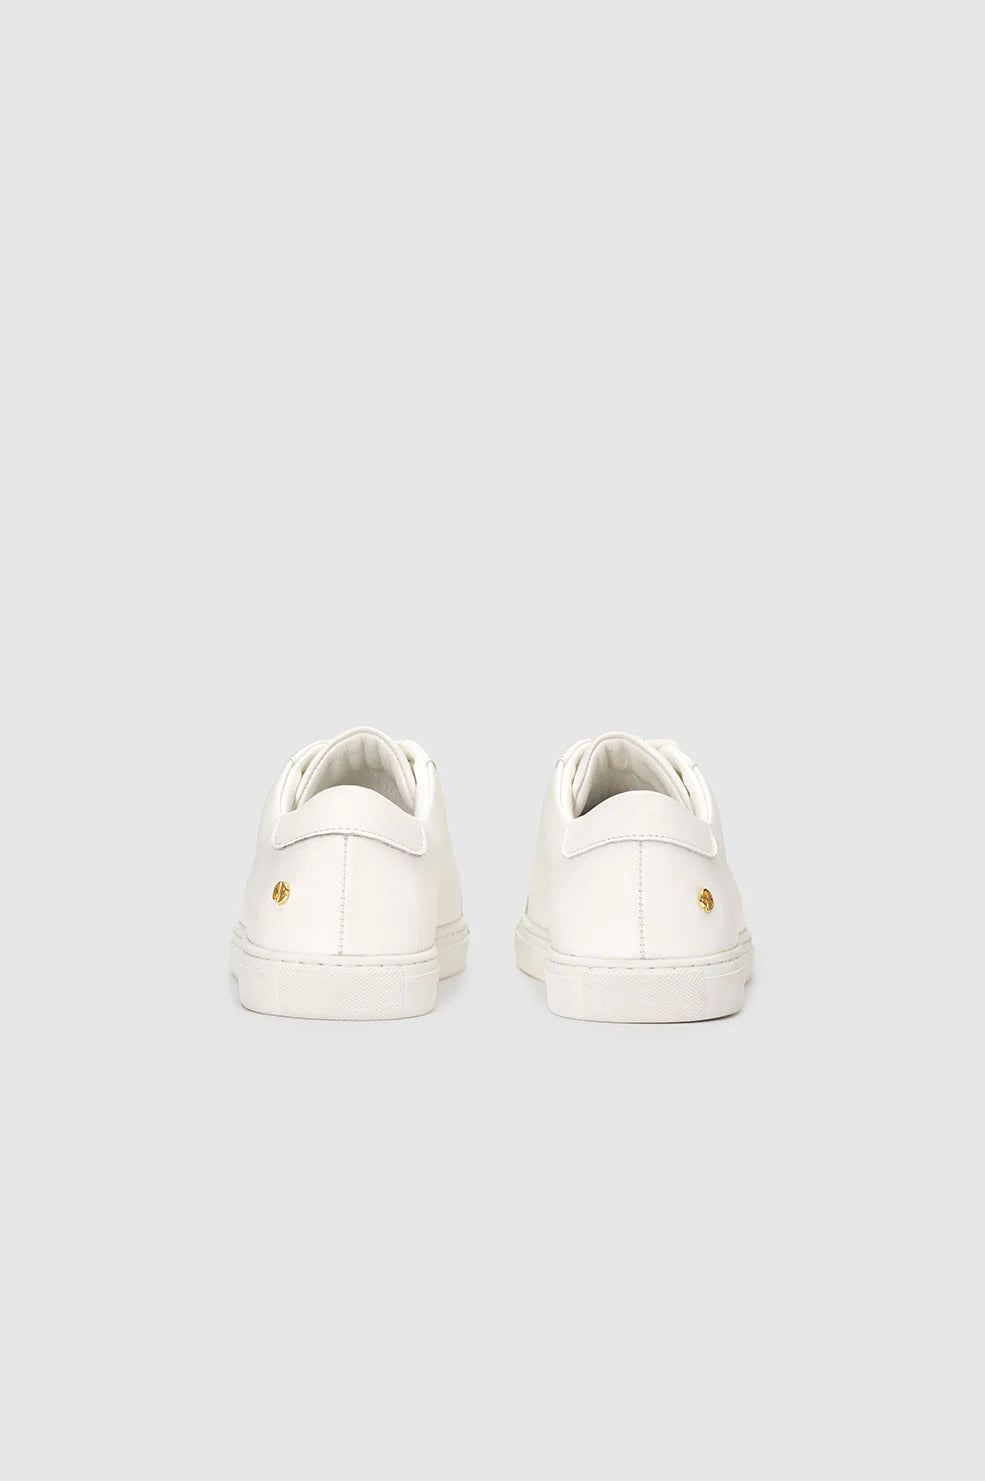 Anine Bing - Liane Sneakers in White